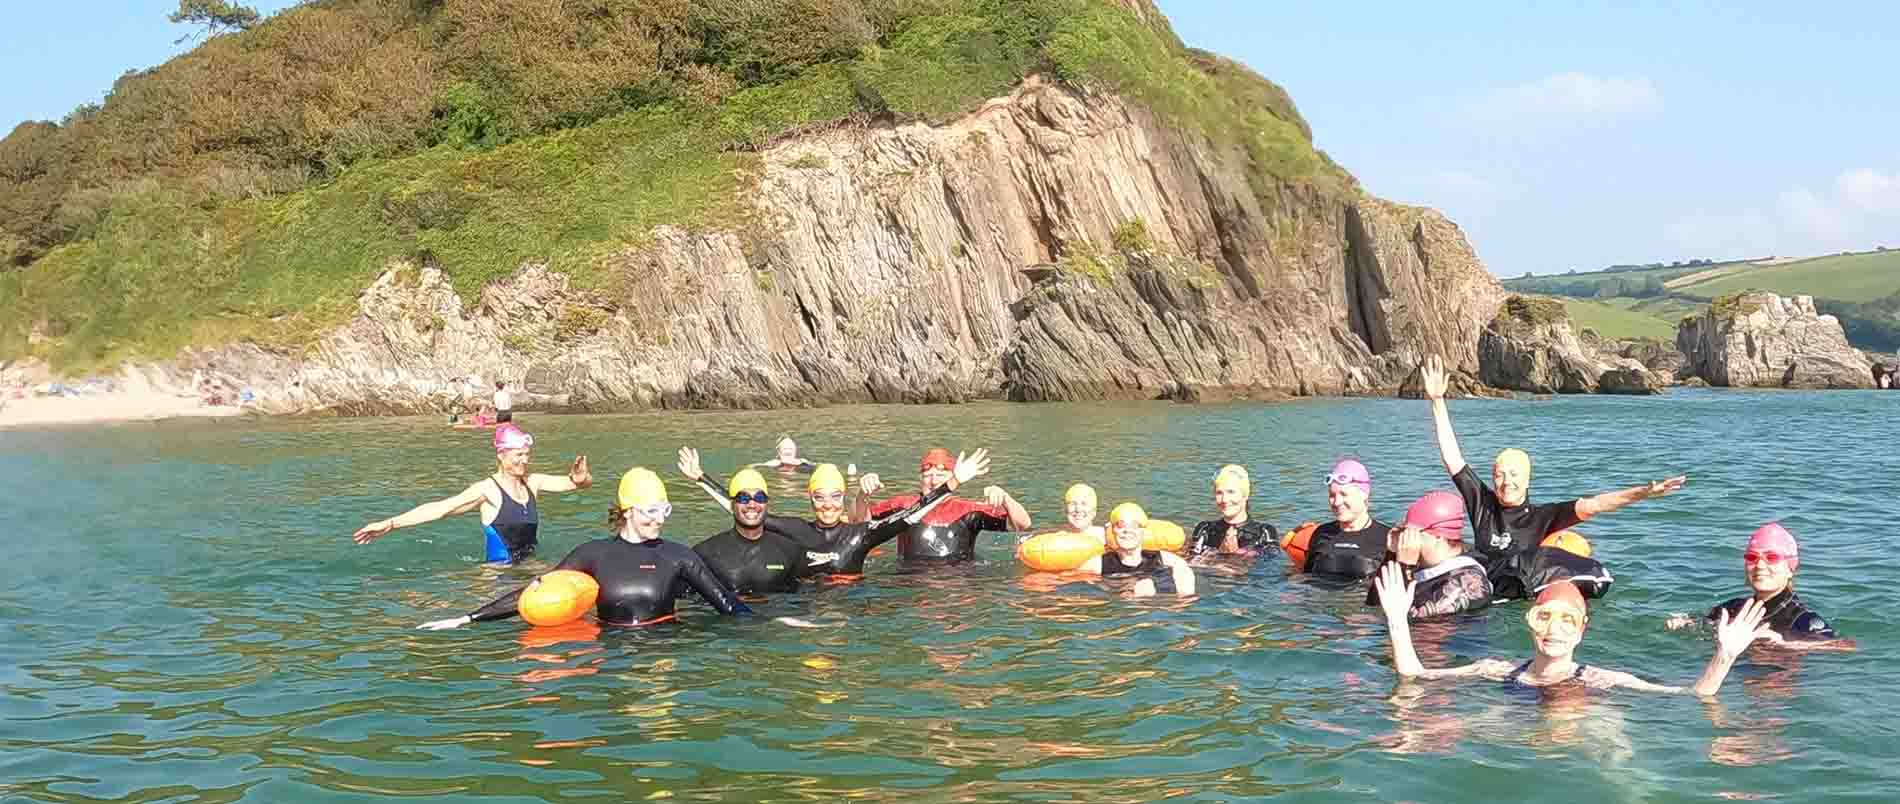 Iconic Swims sea swimming in Devon